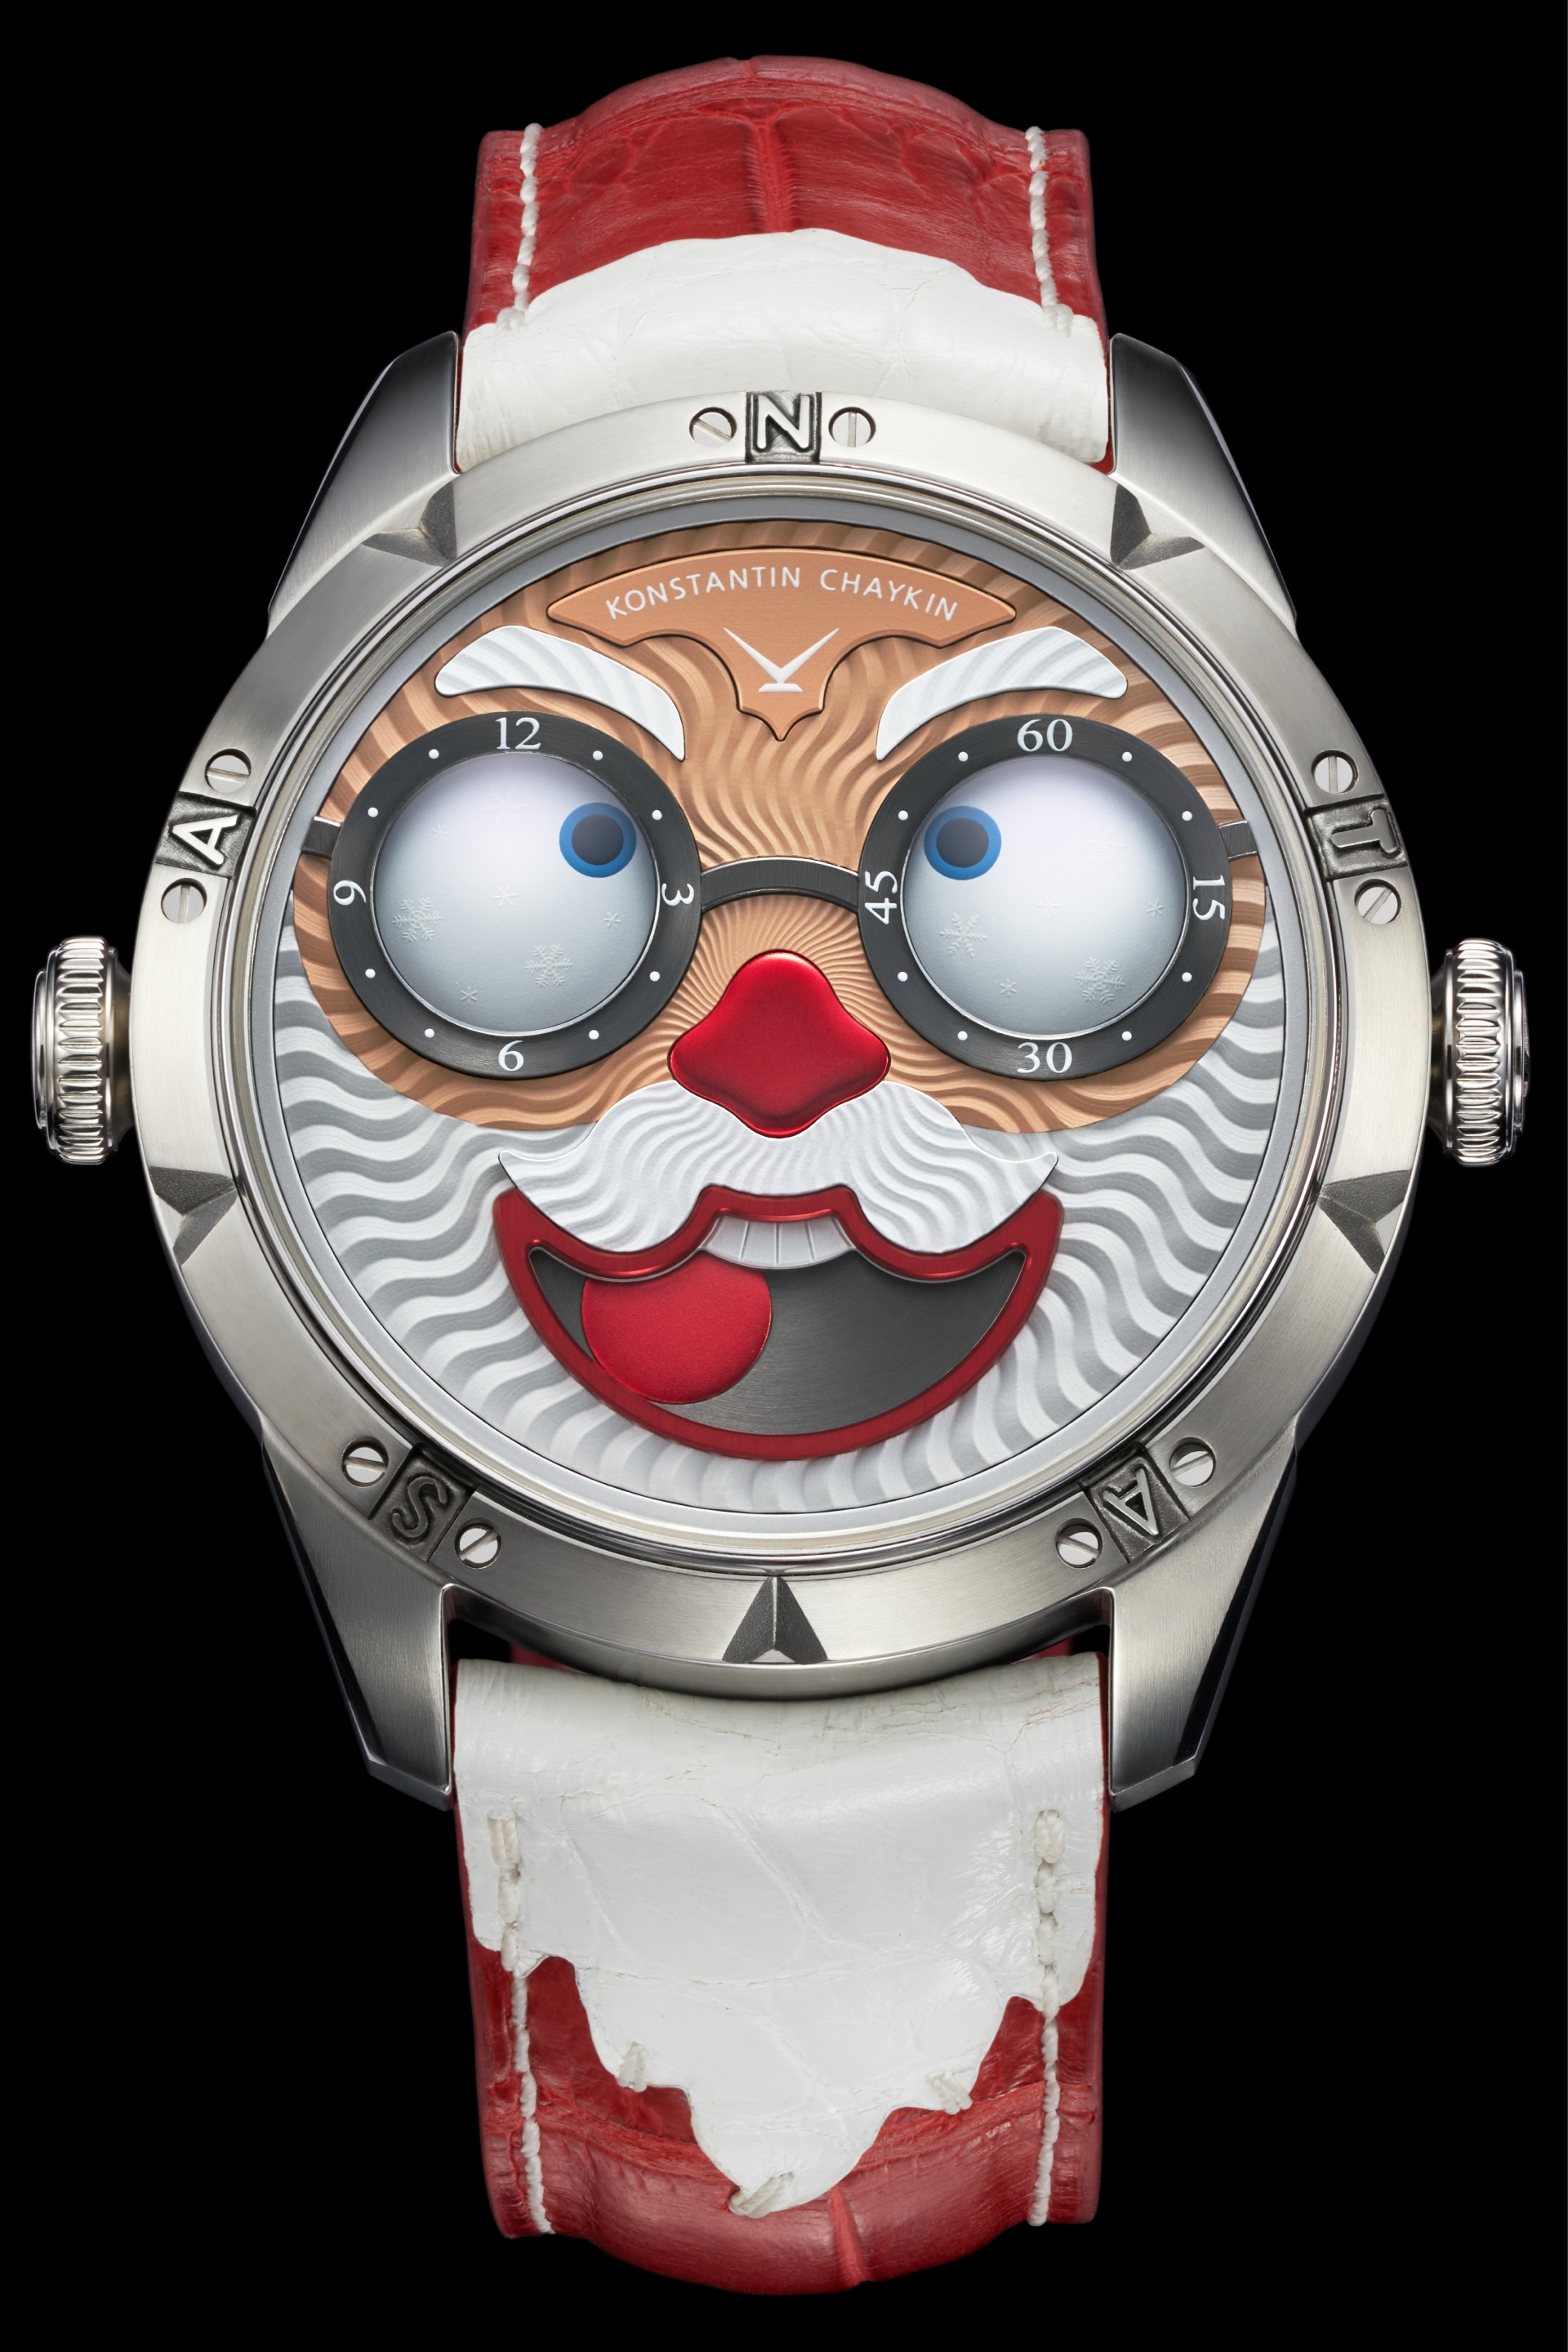 Часы Santa 2021 Special Edition,&nbsp;Konstantin Chaykin